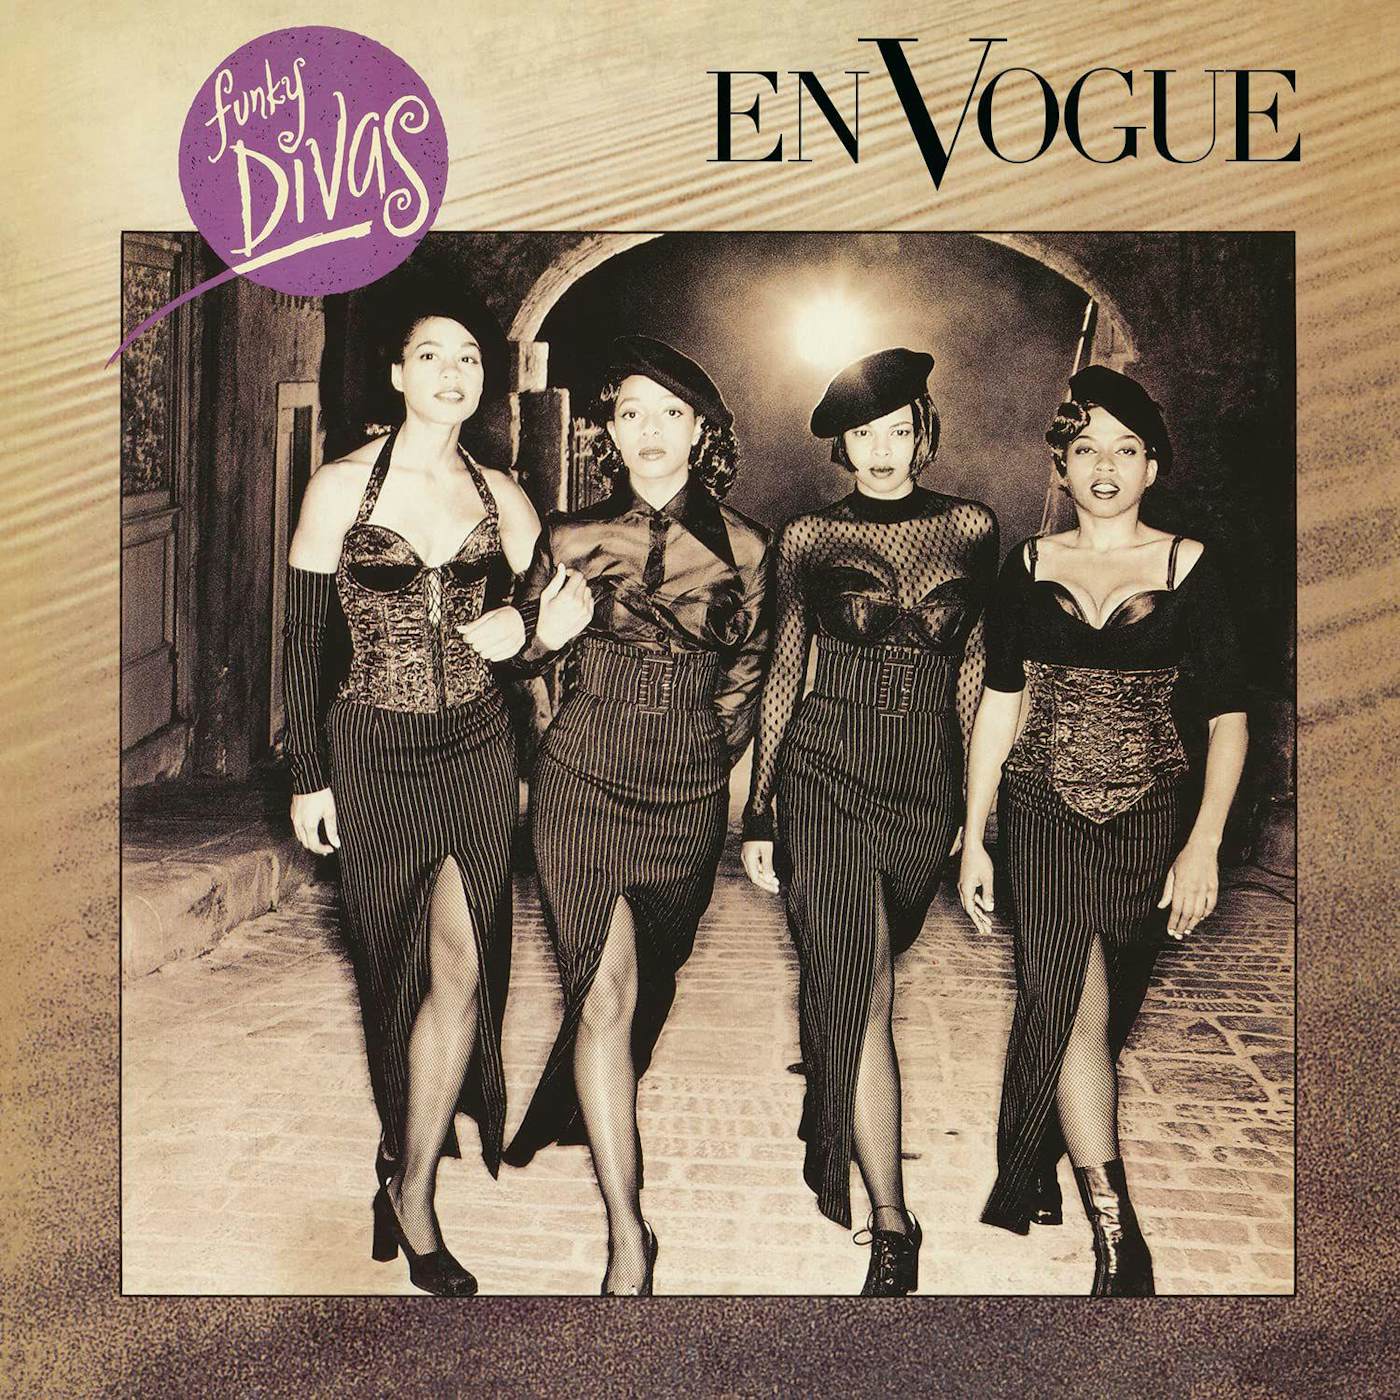 En Vogue Funky Divas Vinyl Record